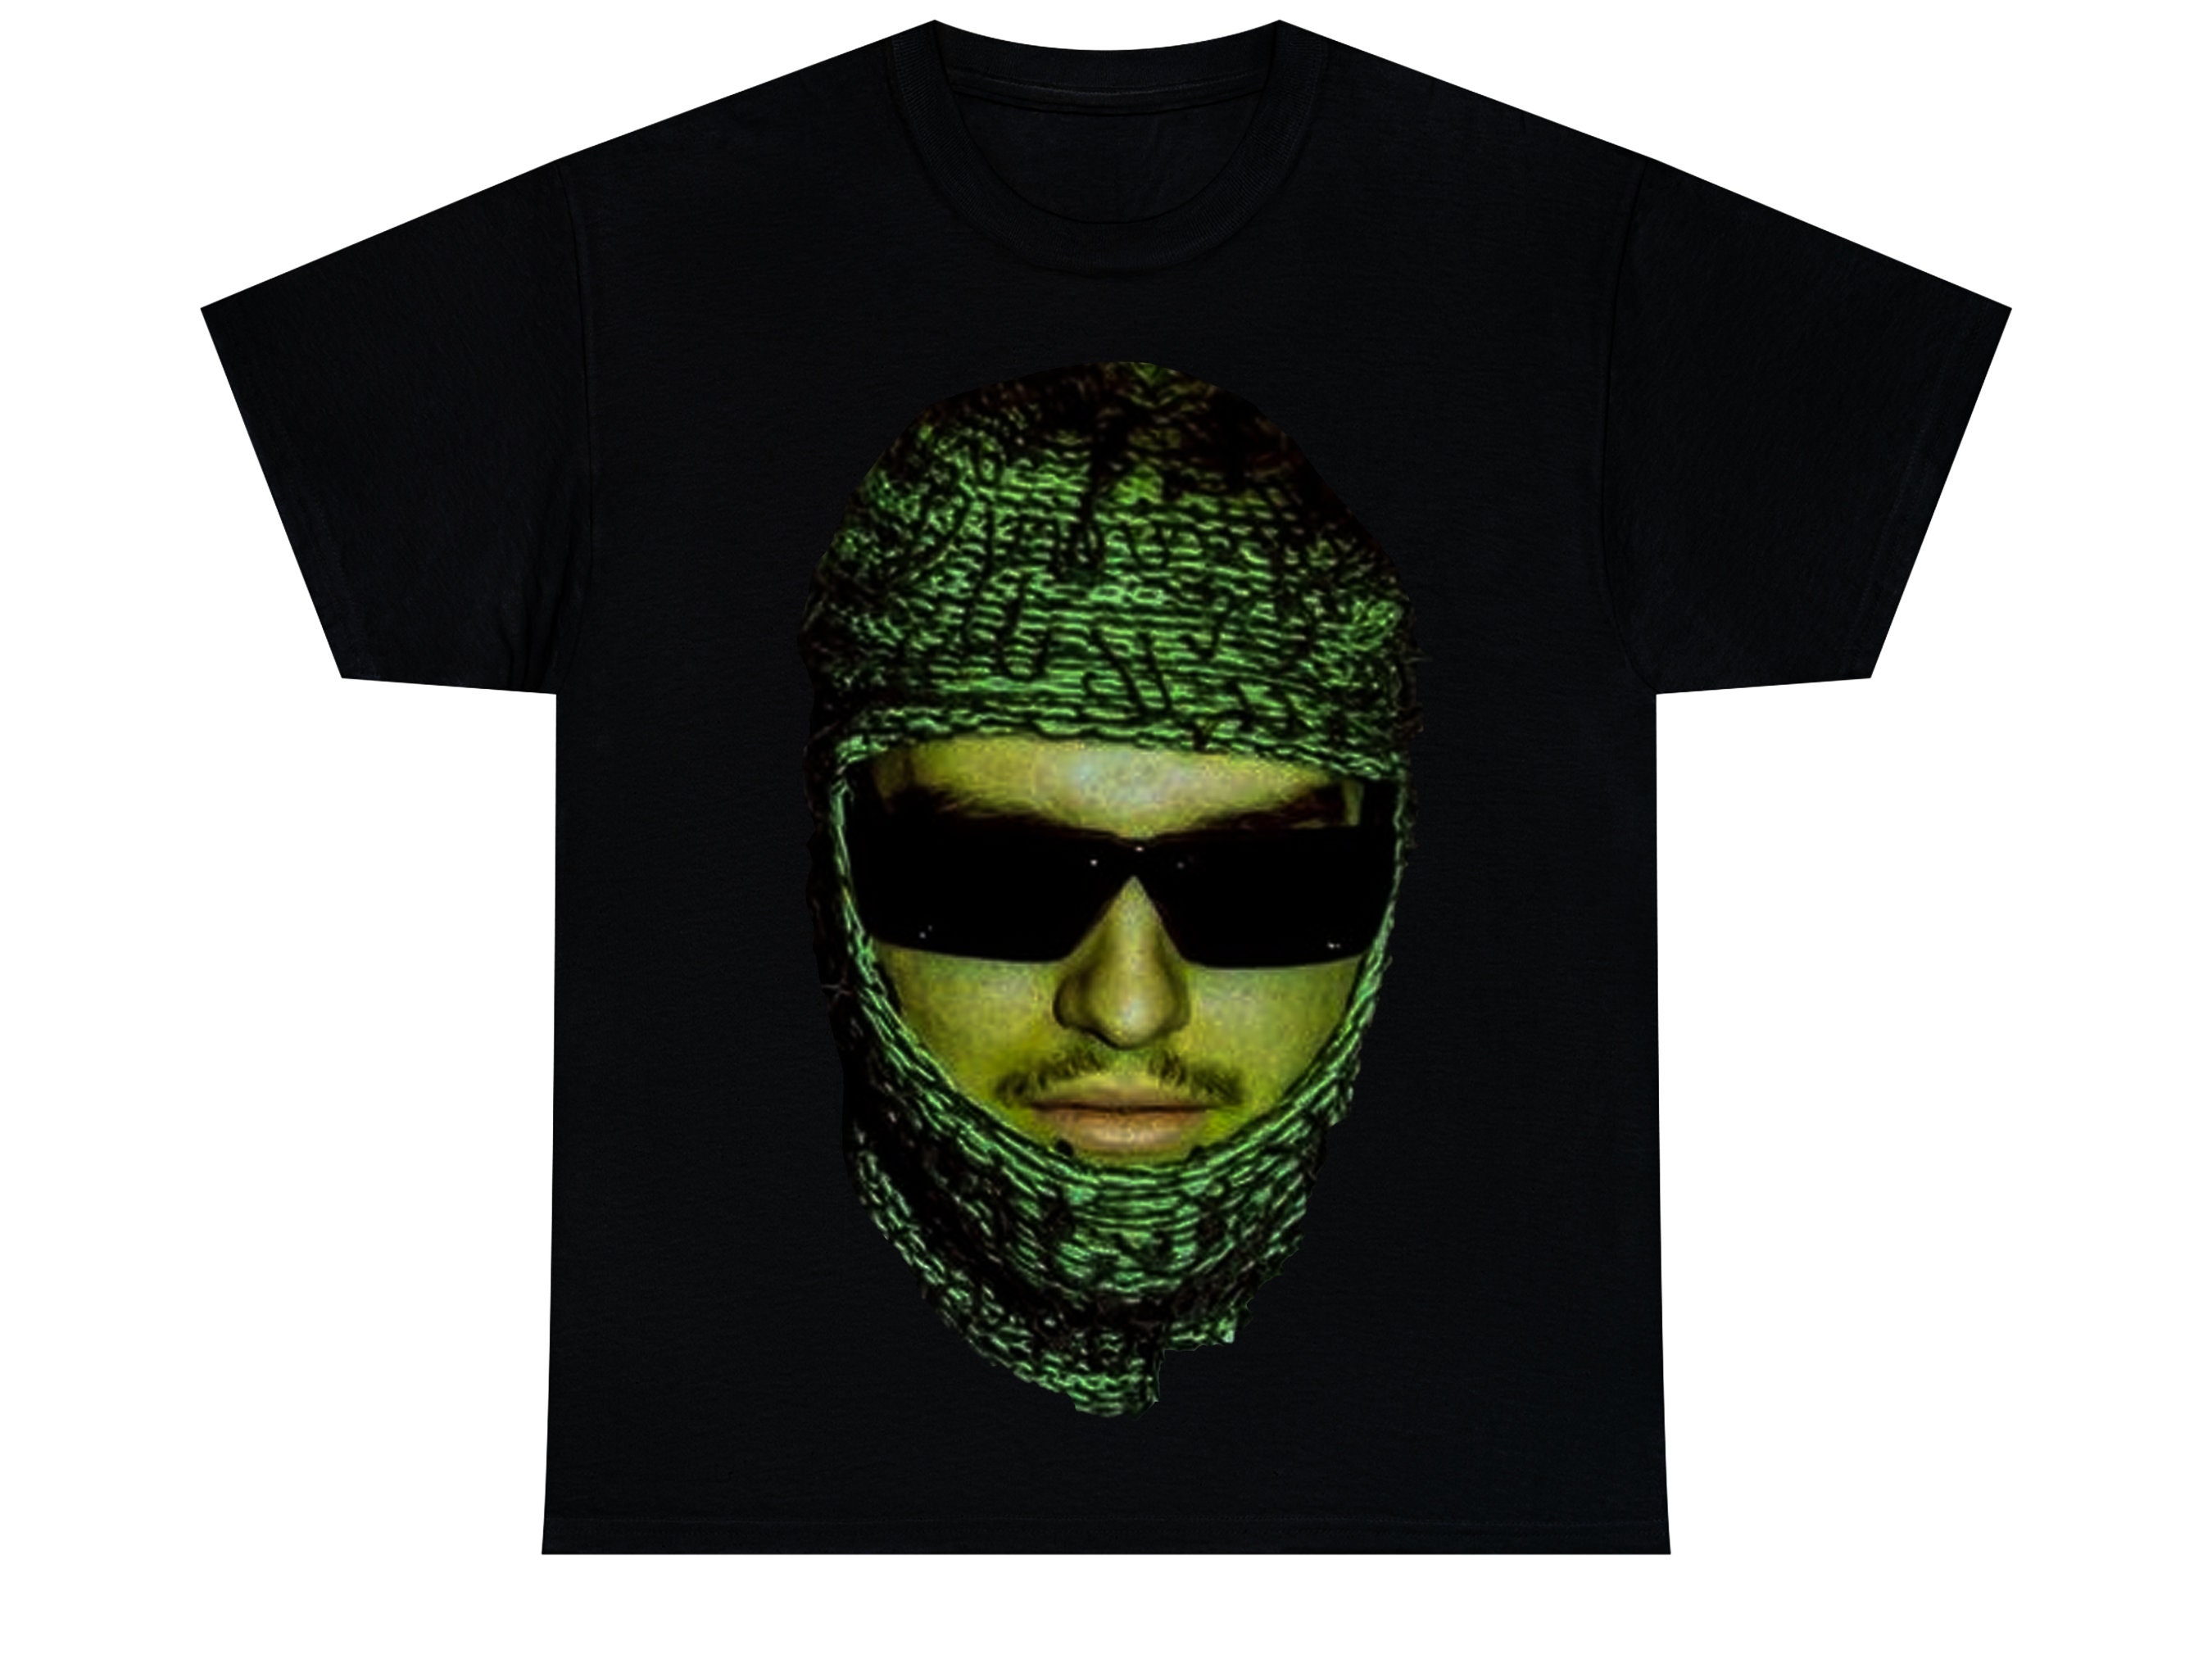 PremierCloset Yeat Album Aftërlyfe Graphic Tee, Yeat Rapper Shirt, Graphic T Shirt, Aftërlyfe